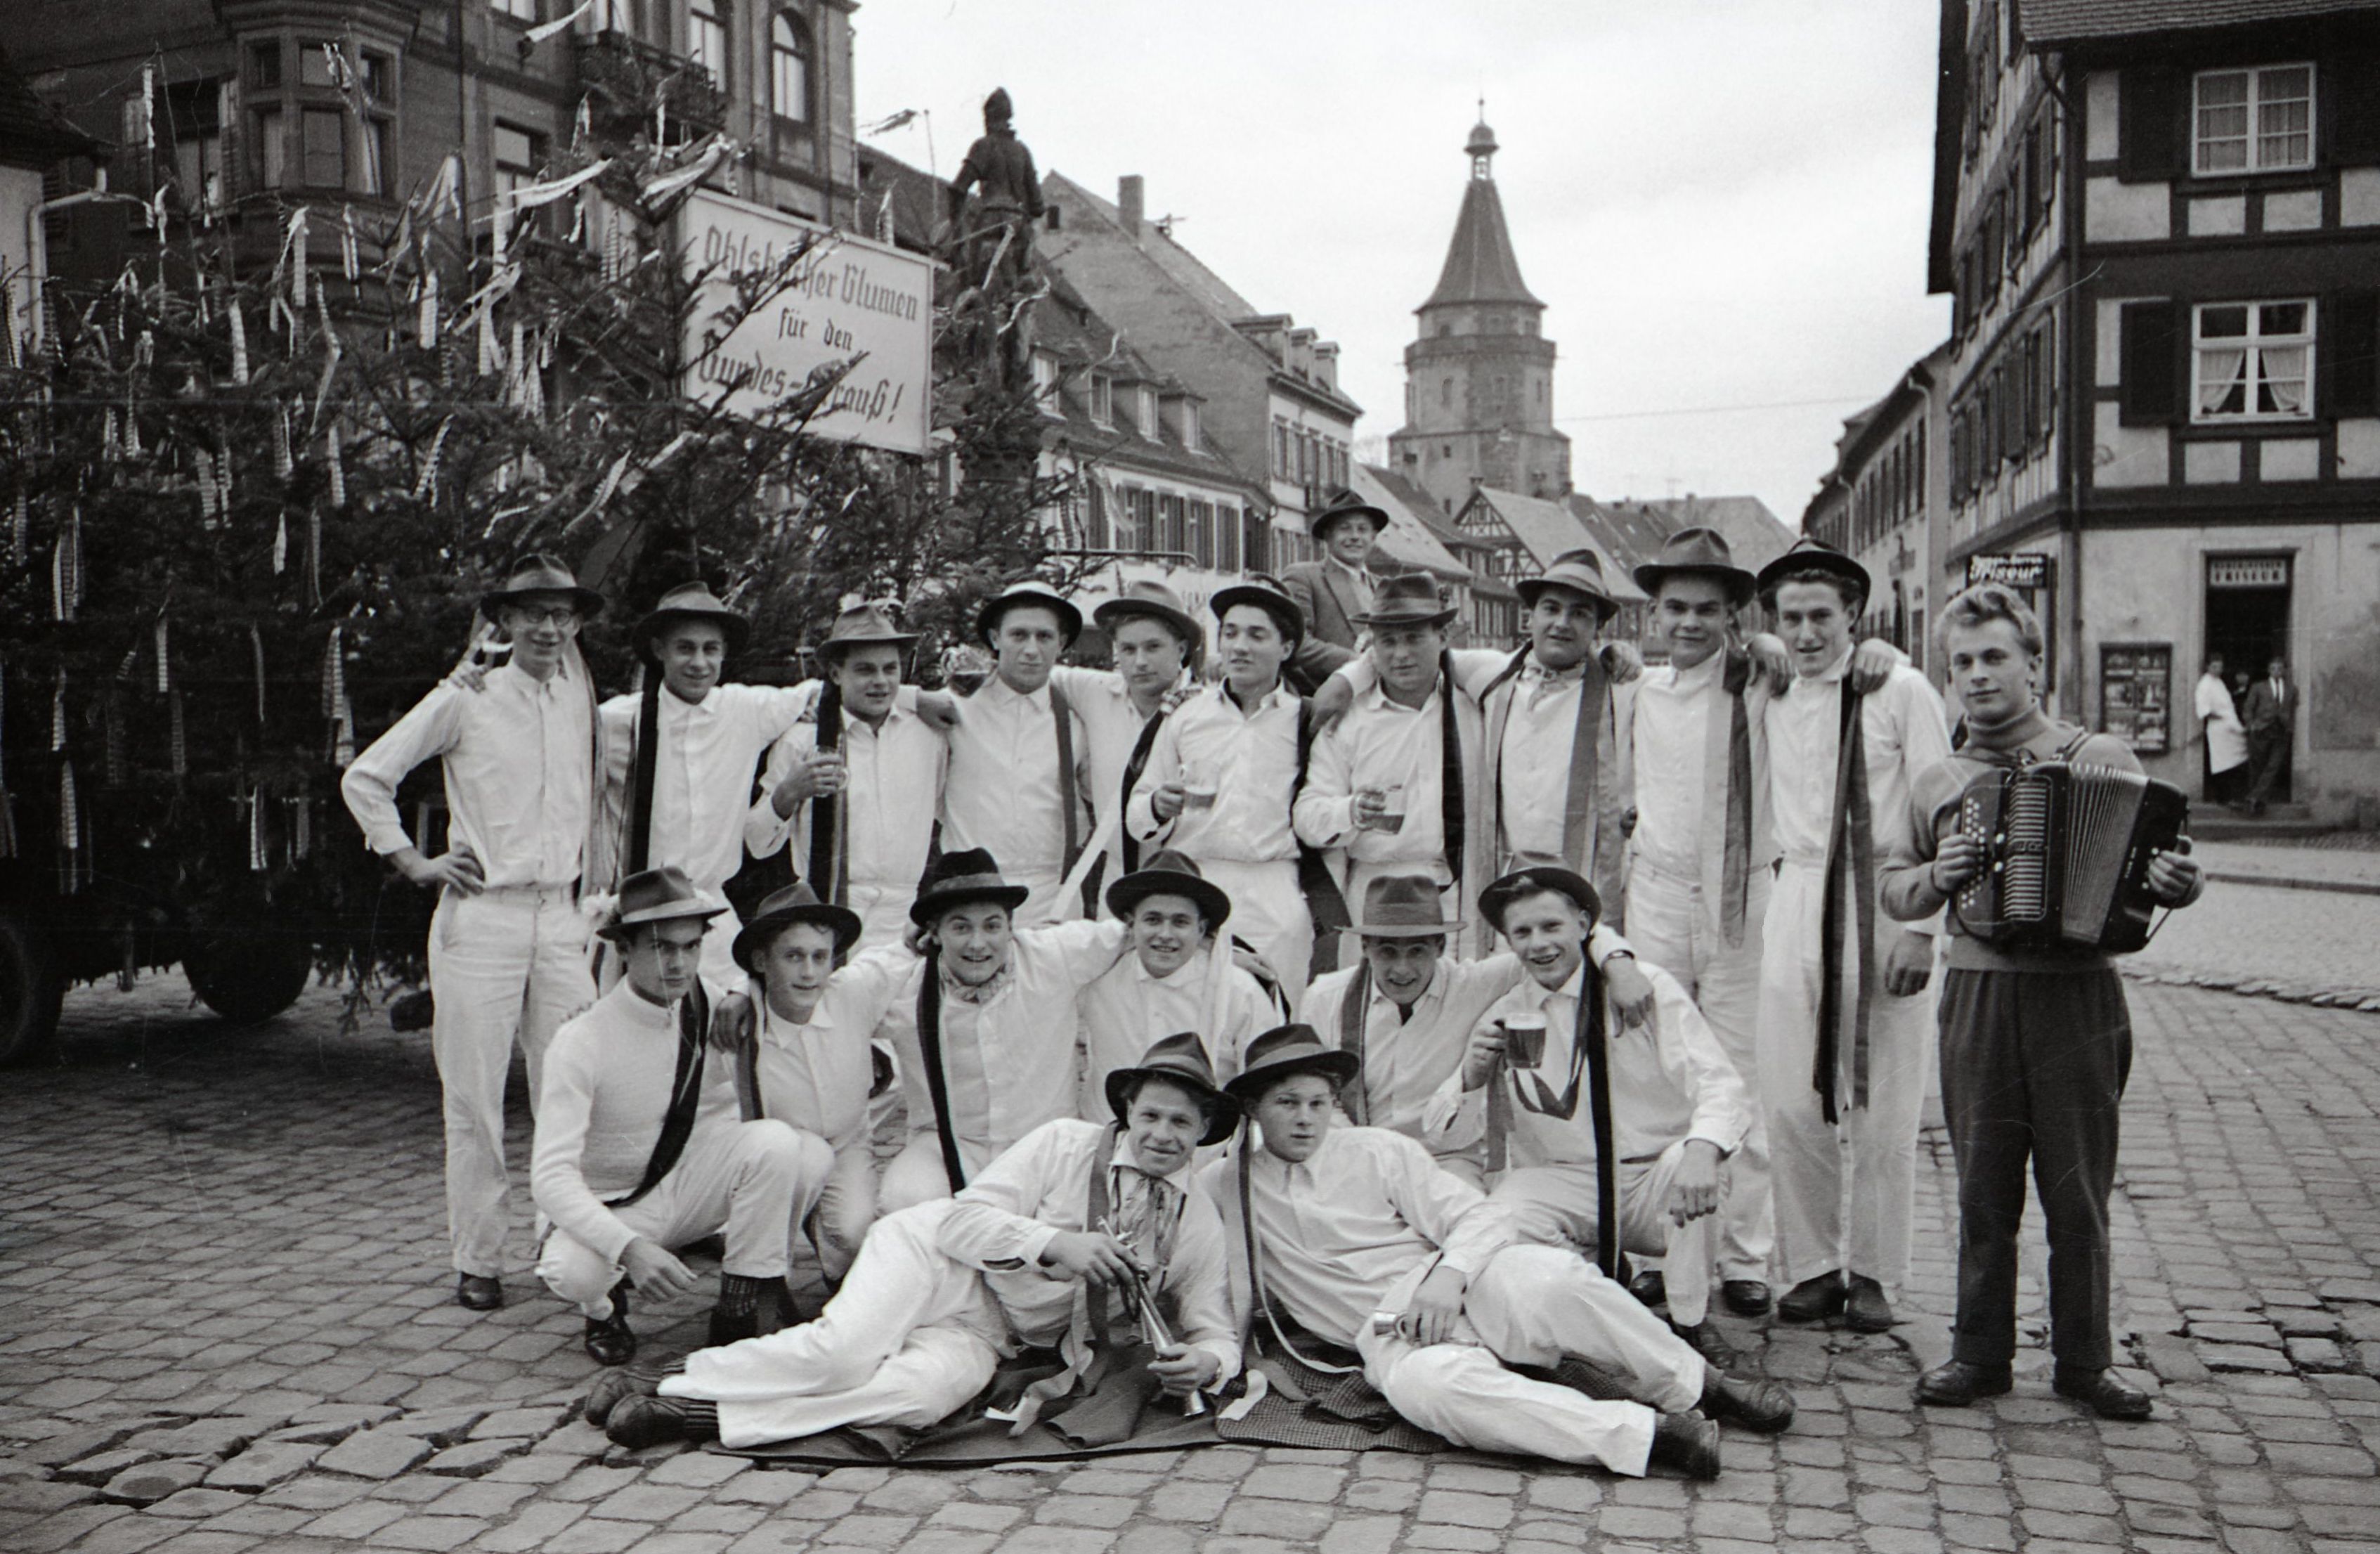 Gruppenbild der Rekruten des Jahrgangs 1958 vor ihrem Wagen auf dem Marktplatz in Gengenbach